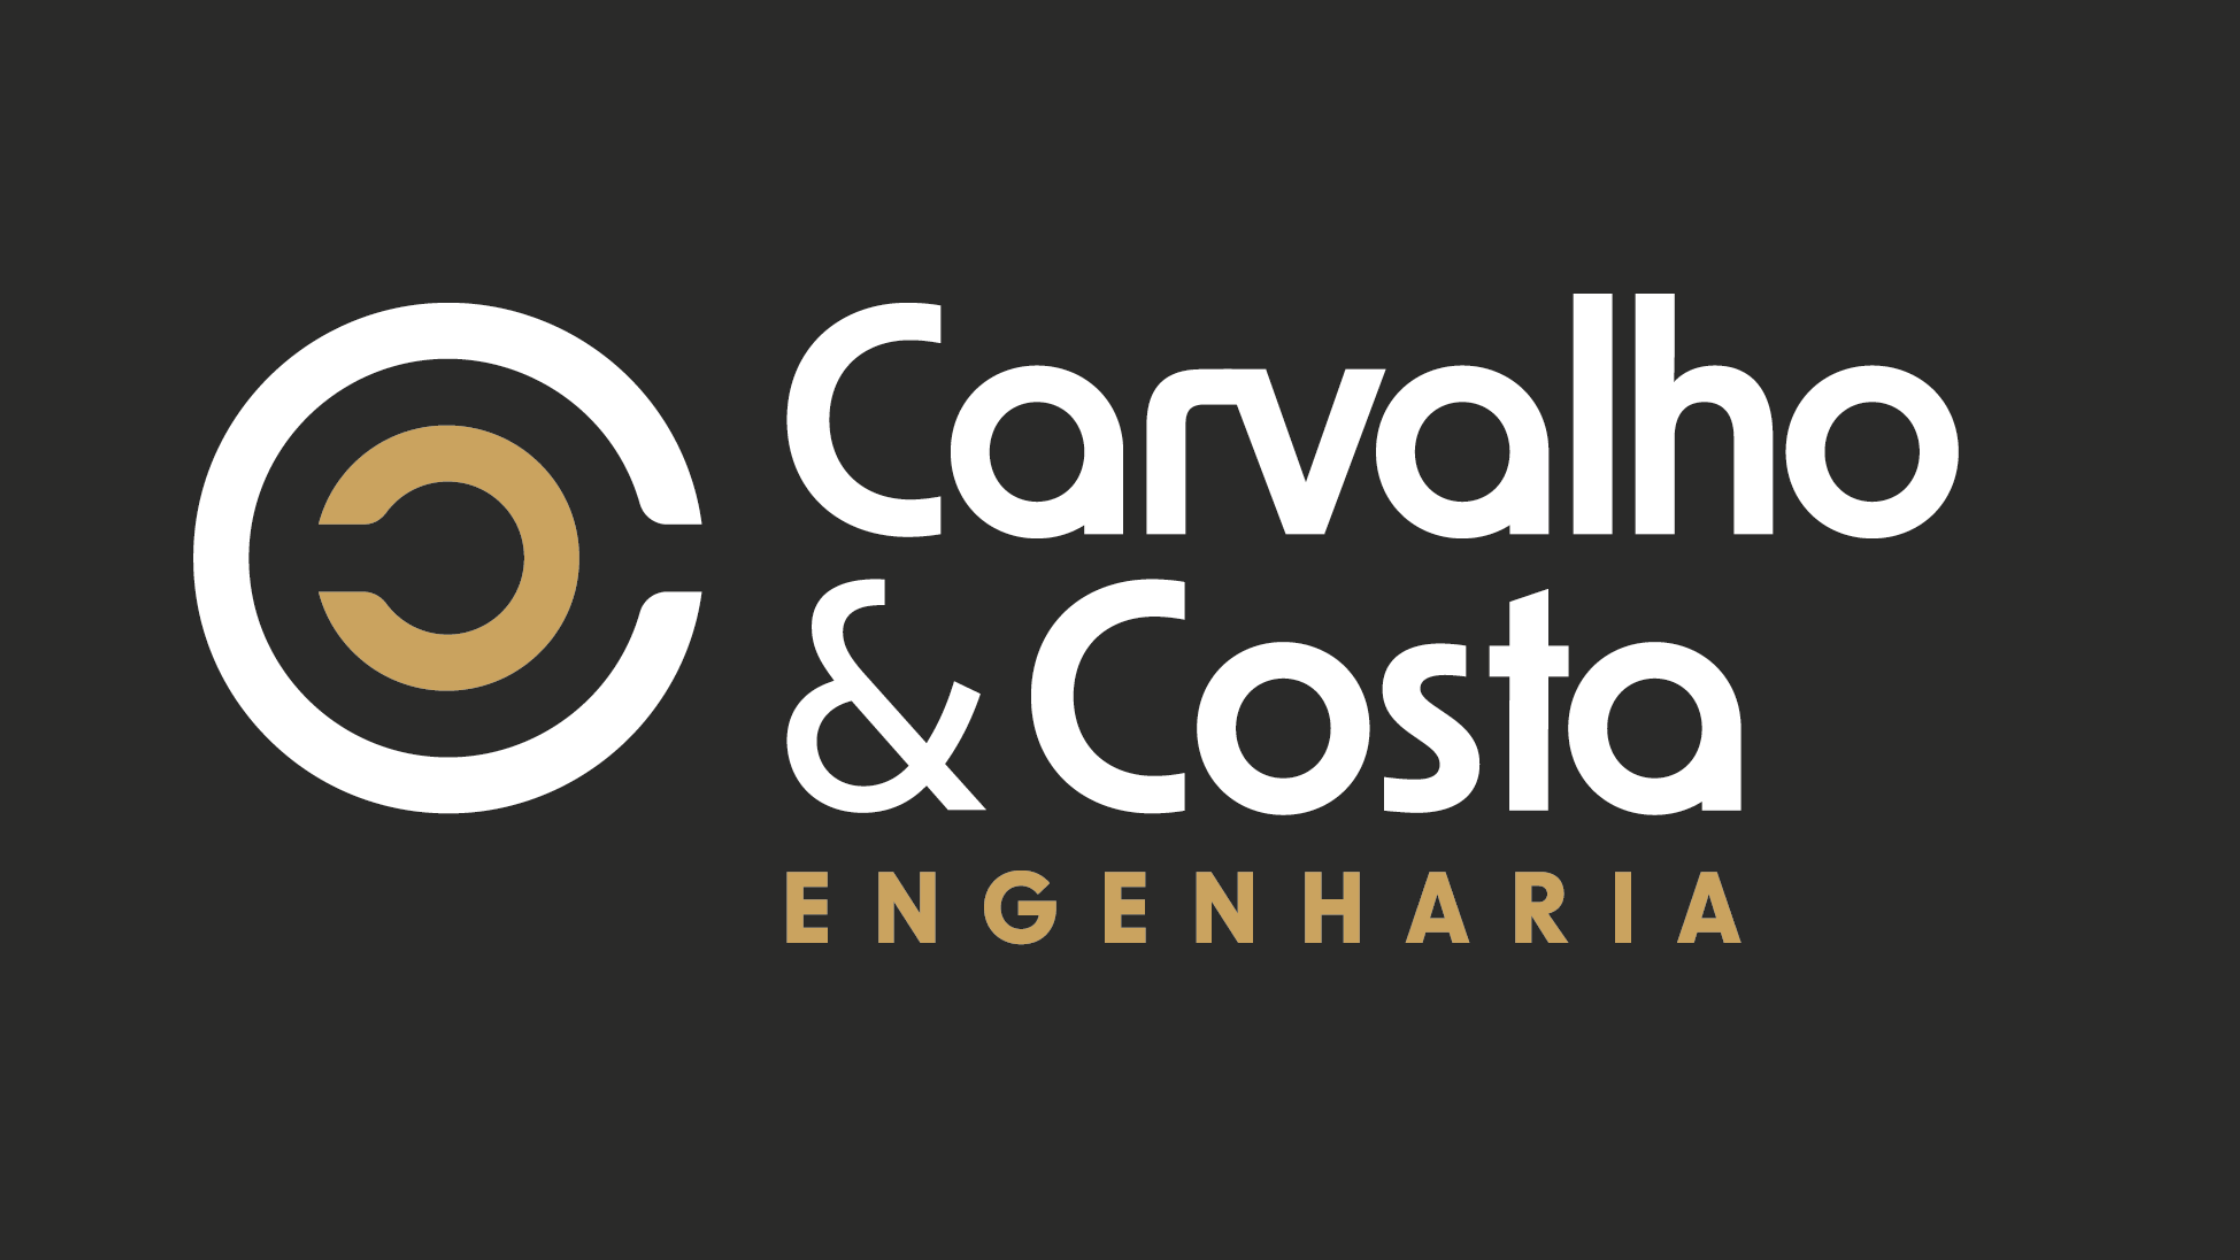 Carvalho & Costa Engenharia